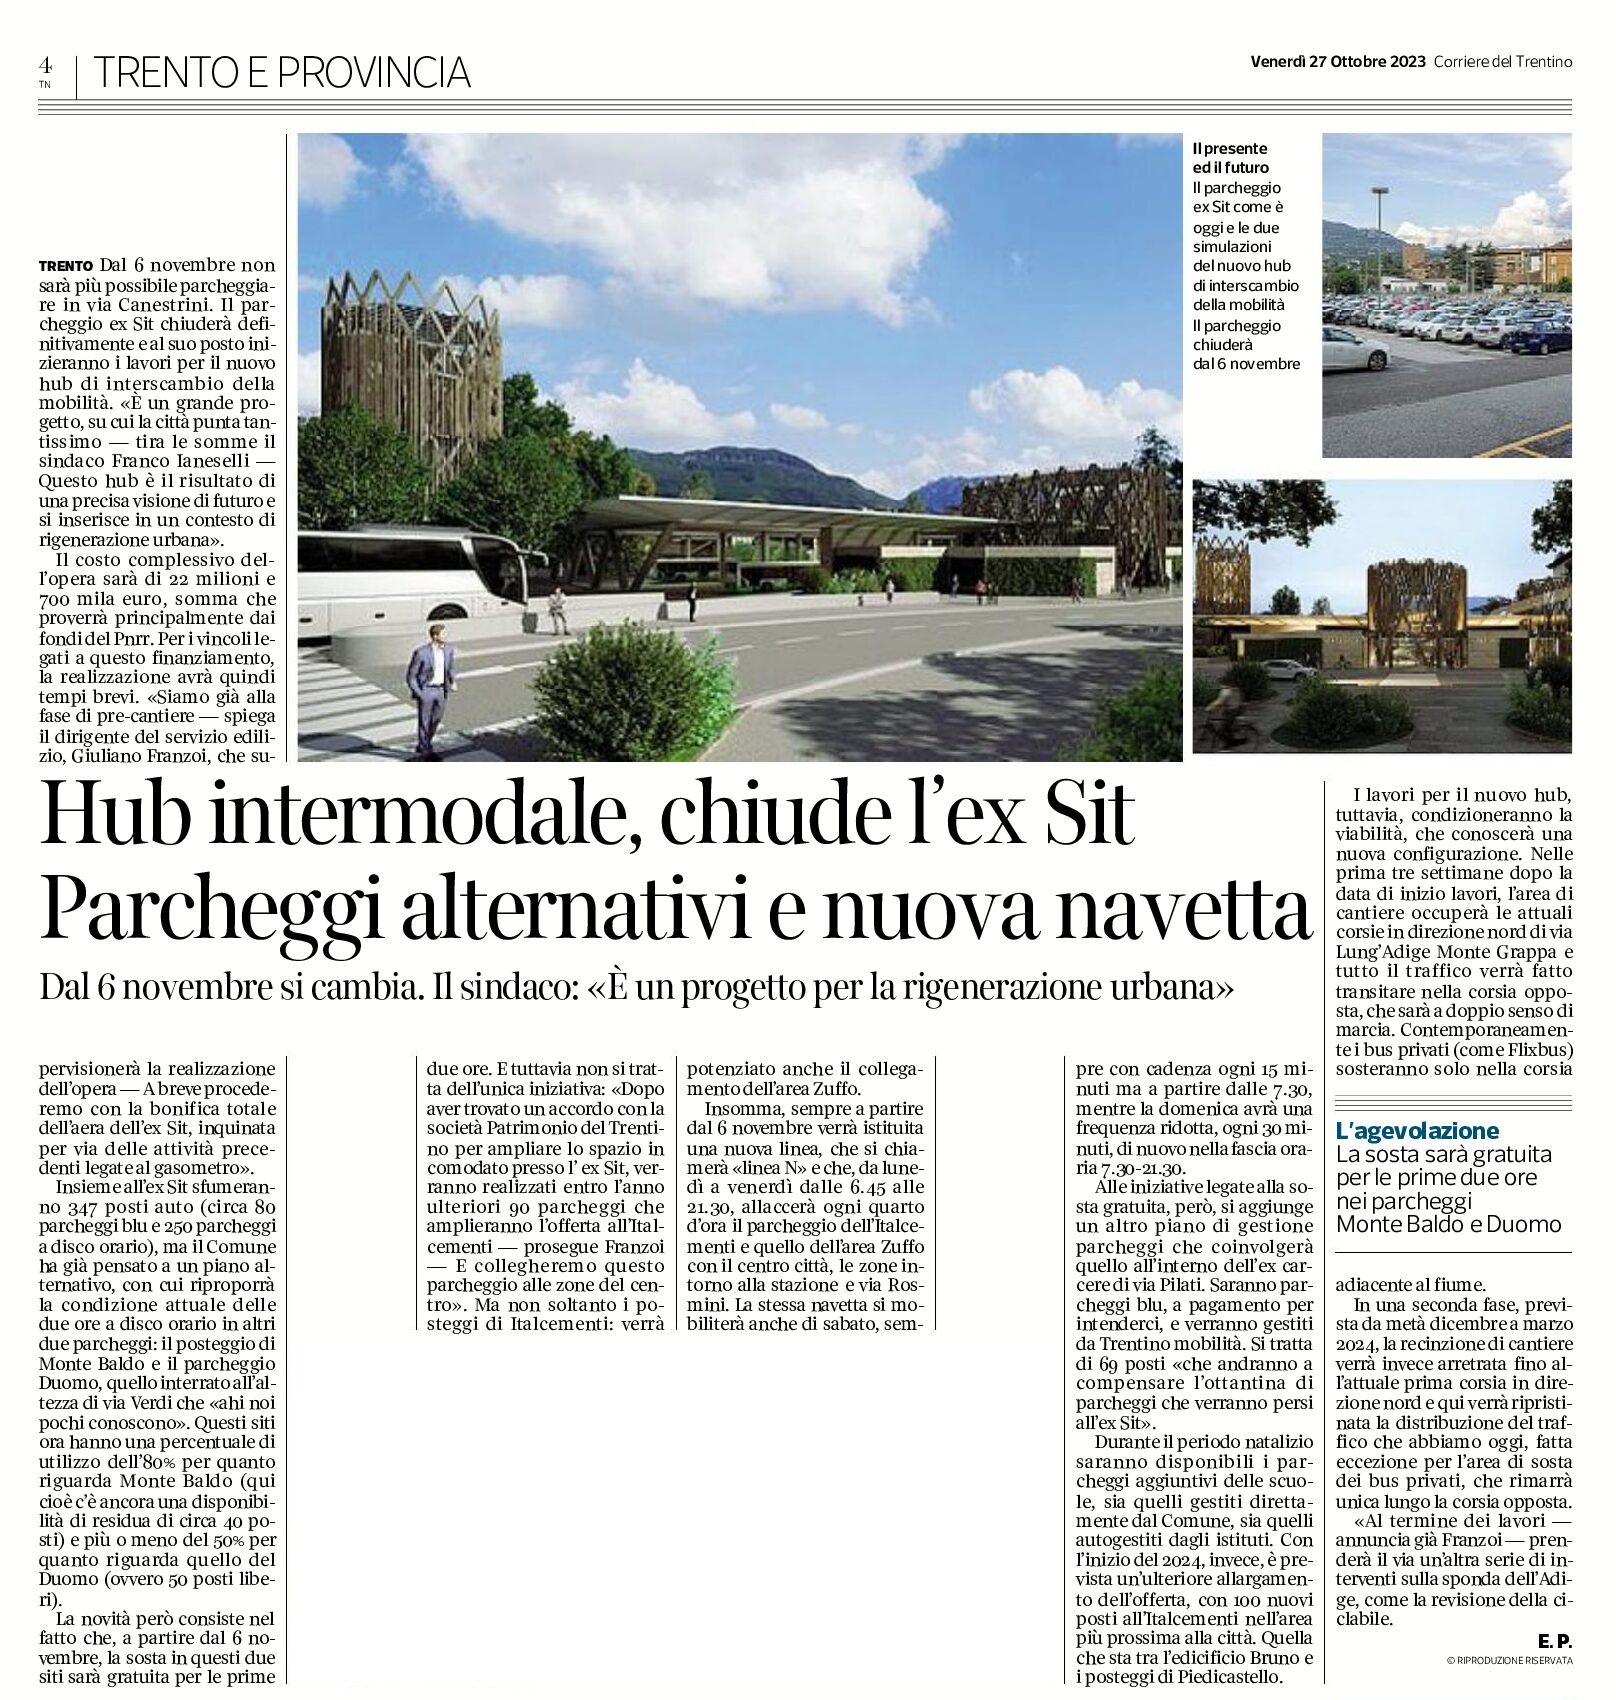 Trento: hub intermodale, chiude l’ex Sit. Parcheggi alternativi e nuova navetta